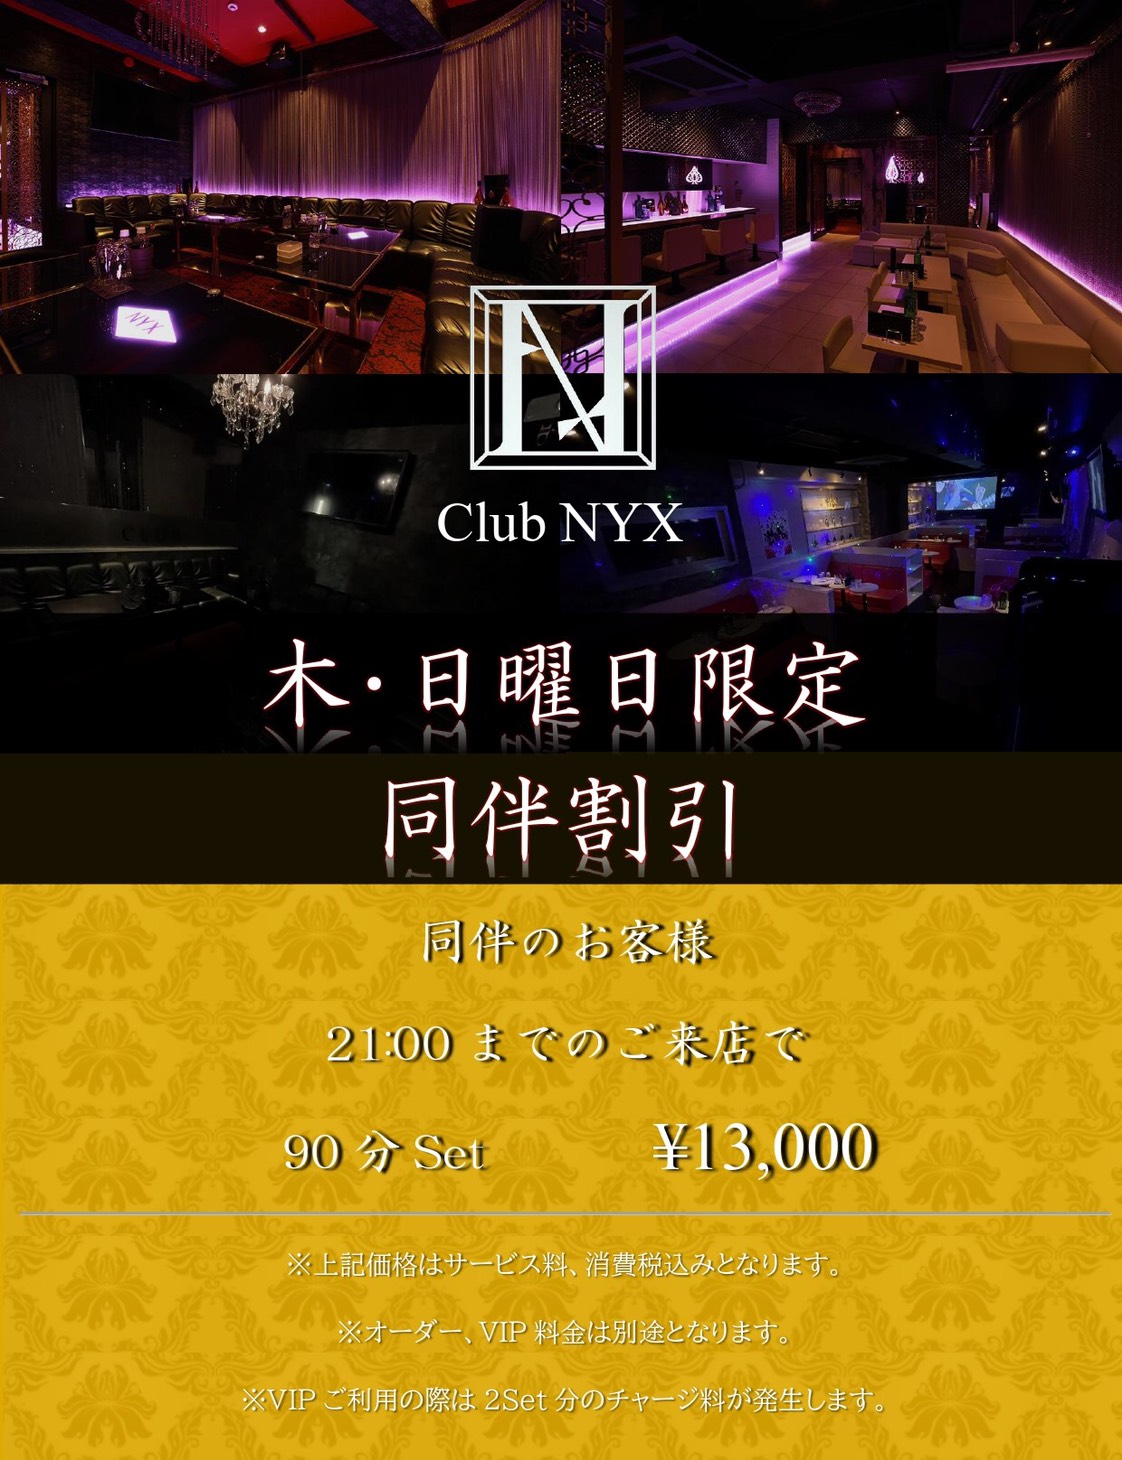 厚木キャバクラ「Club NYX」ショップニュース